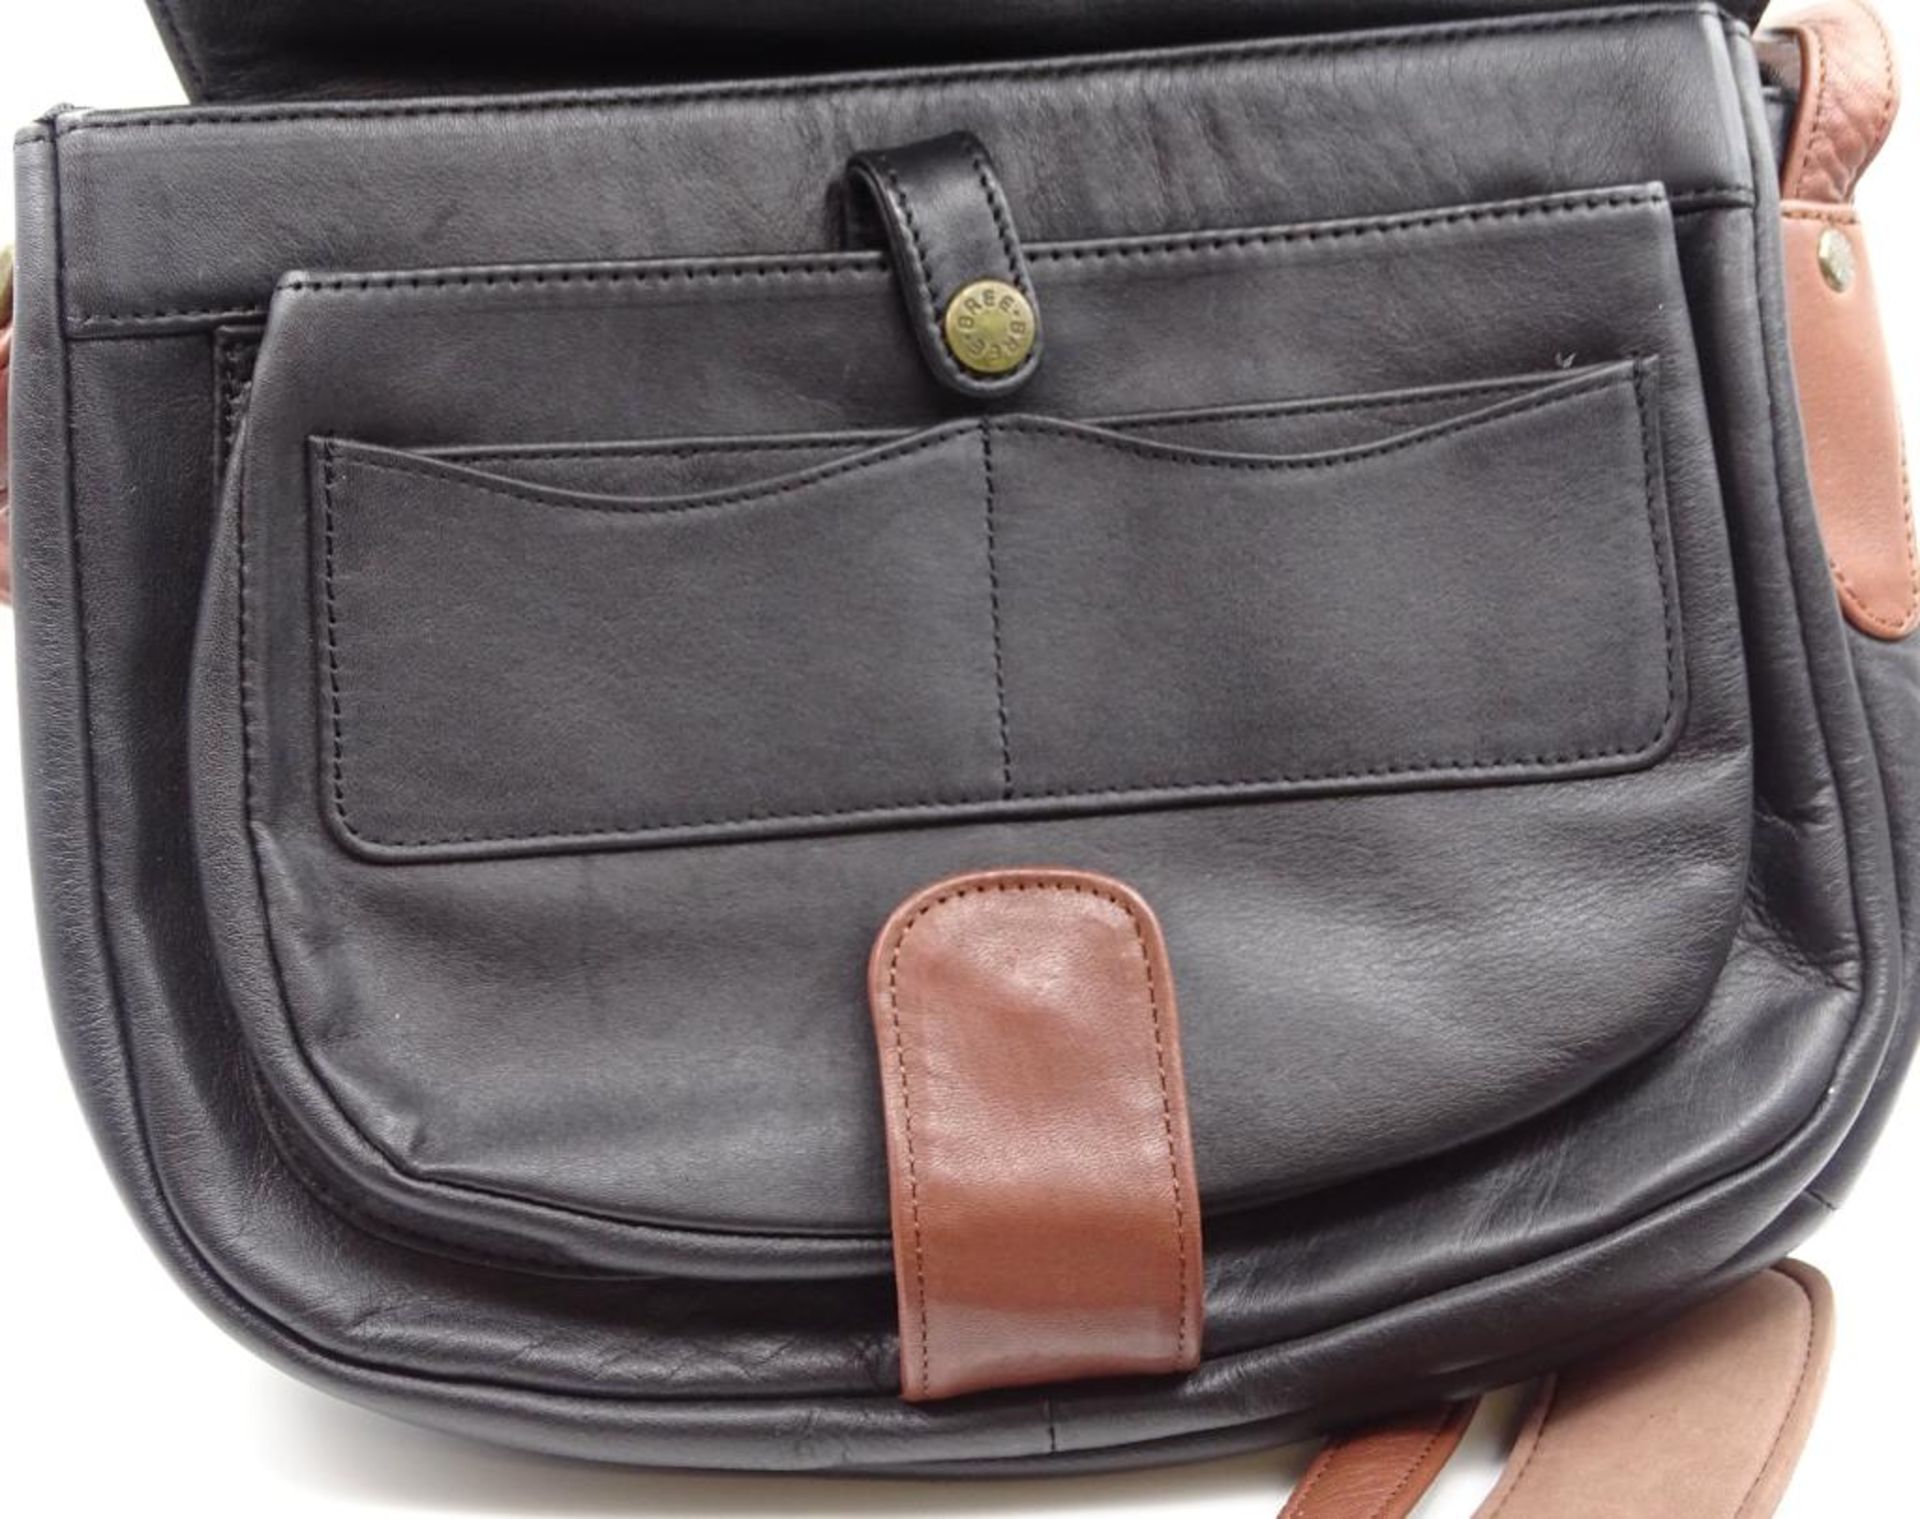 Damen Handtasche, "Bree",schwarz/braun, neuwertiger Zustand,27x23cm - Bild 3 aus 6